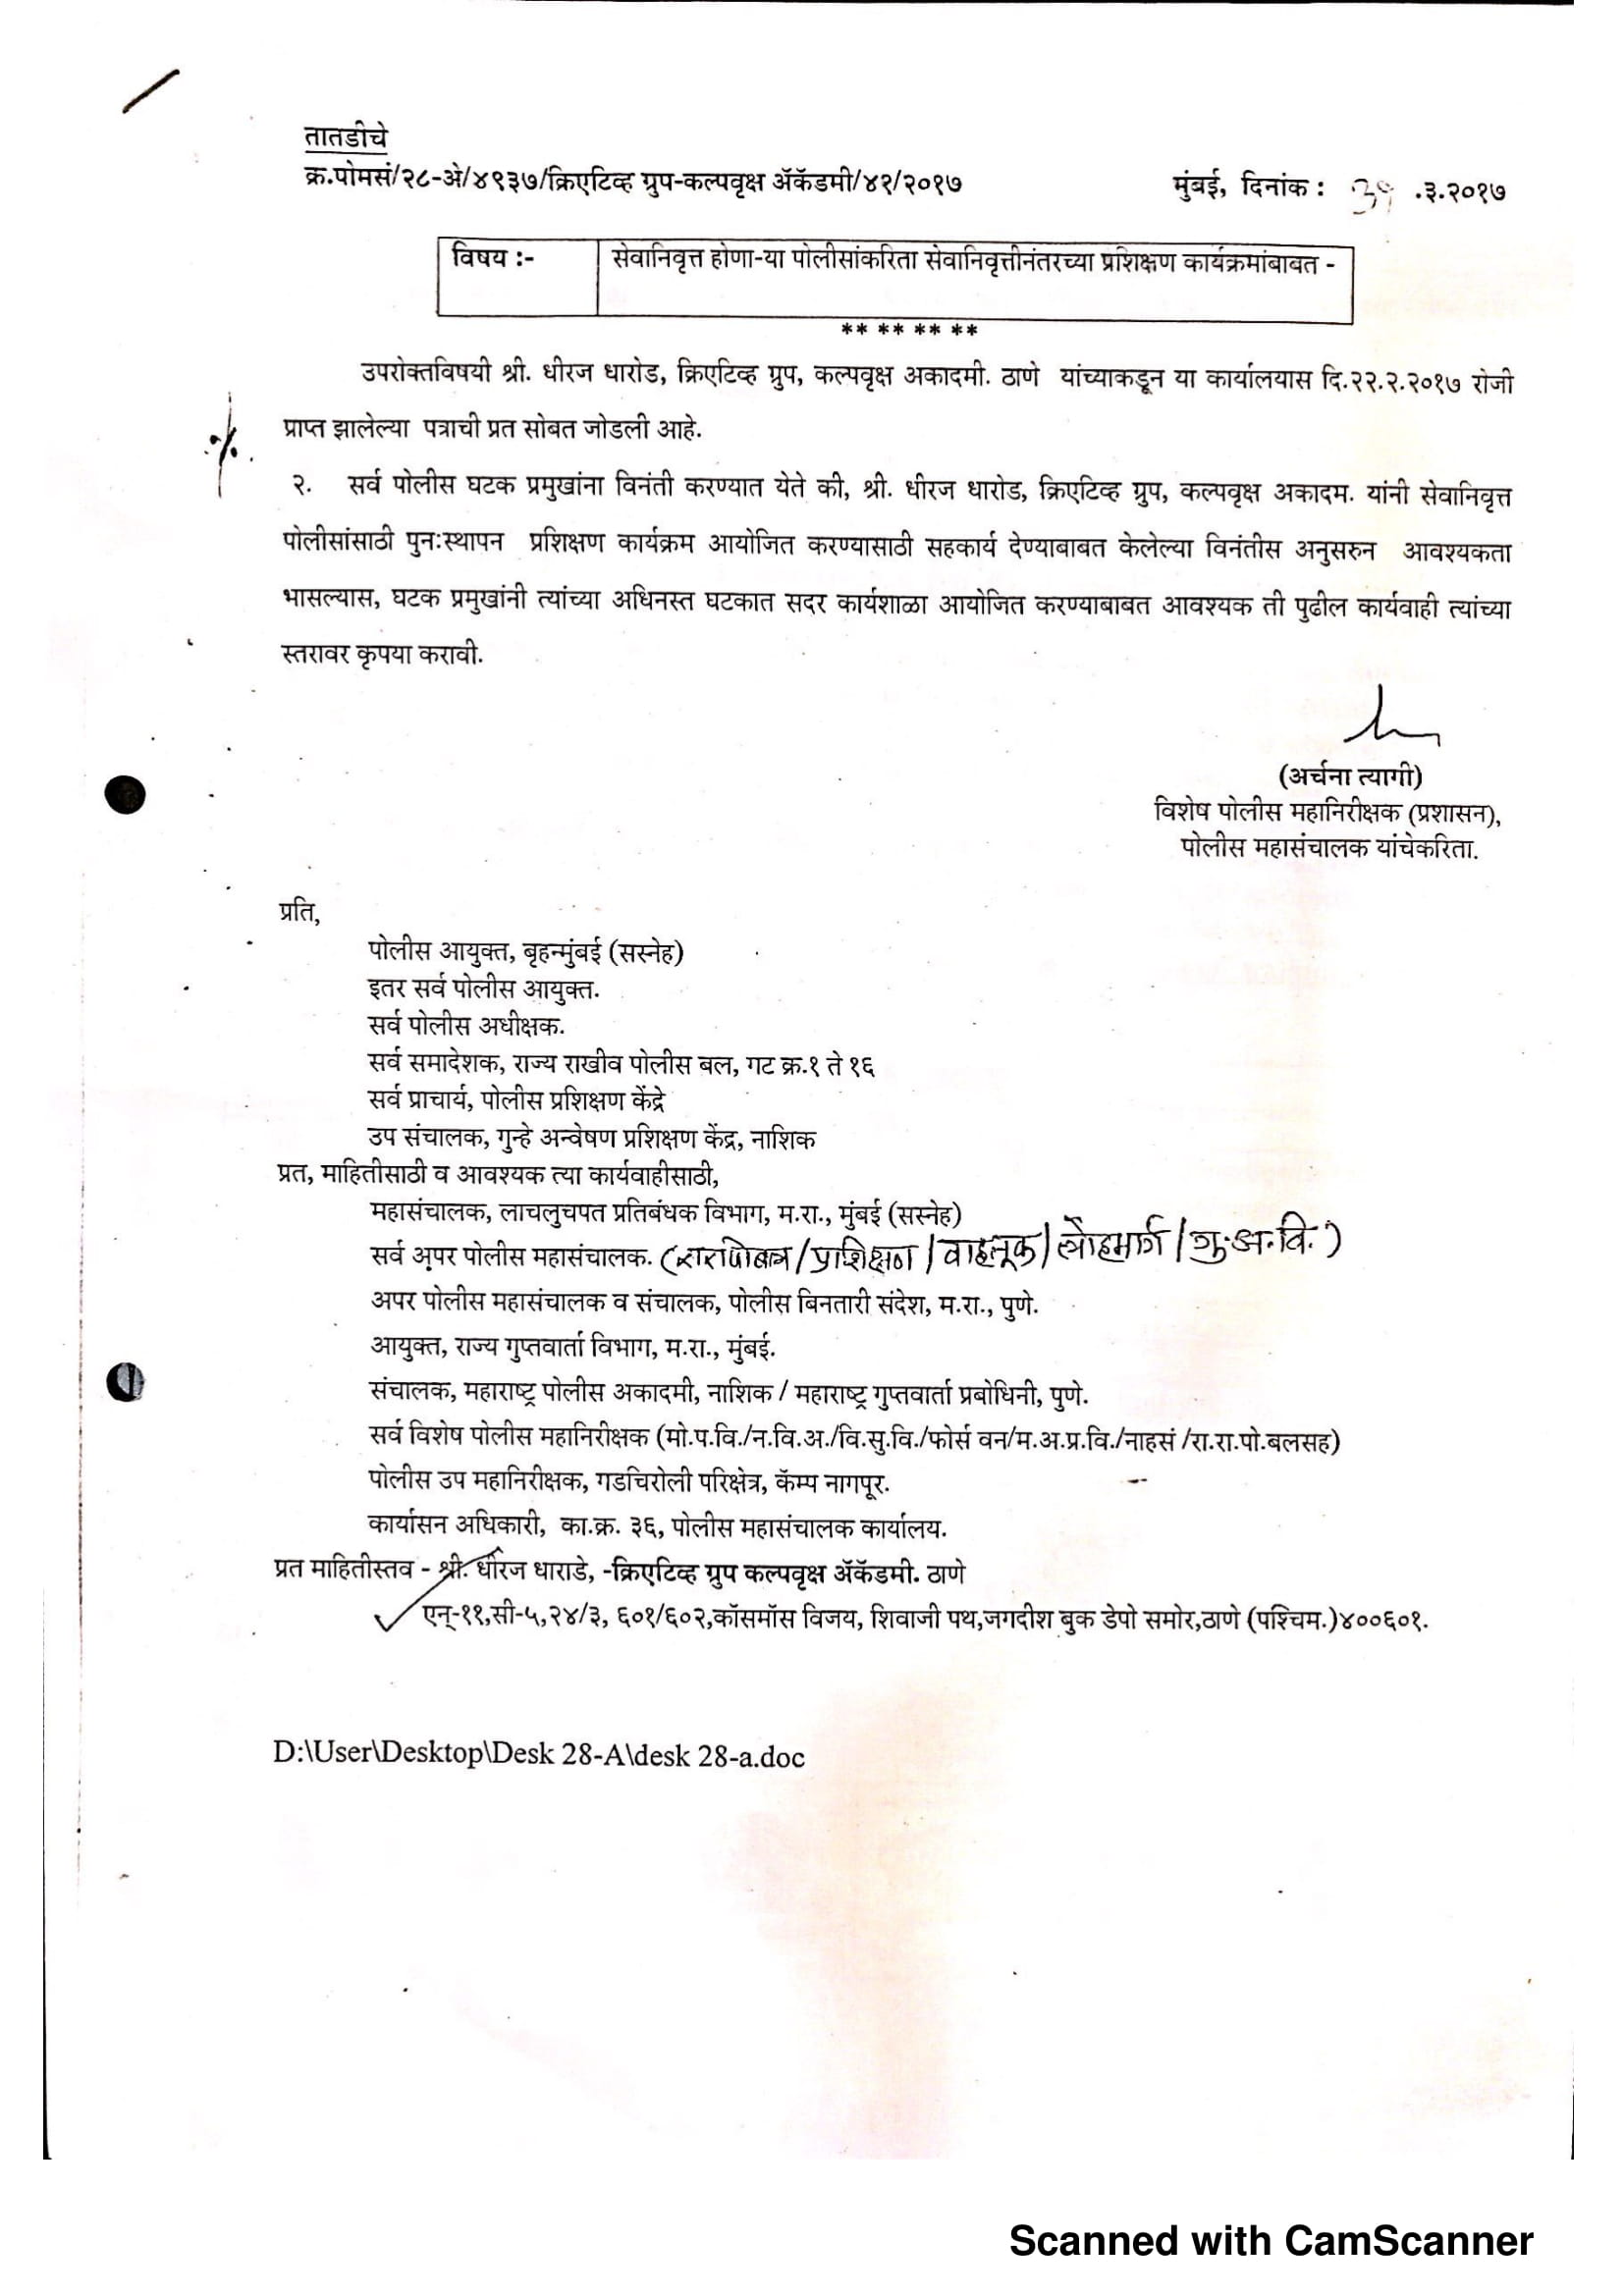 DG Office Maharashtra Letter To CG